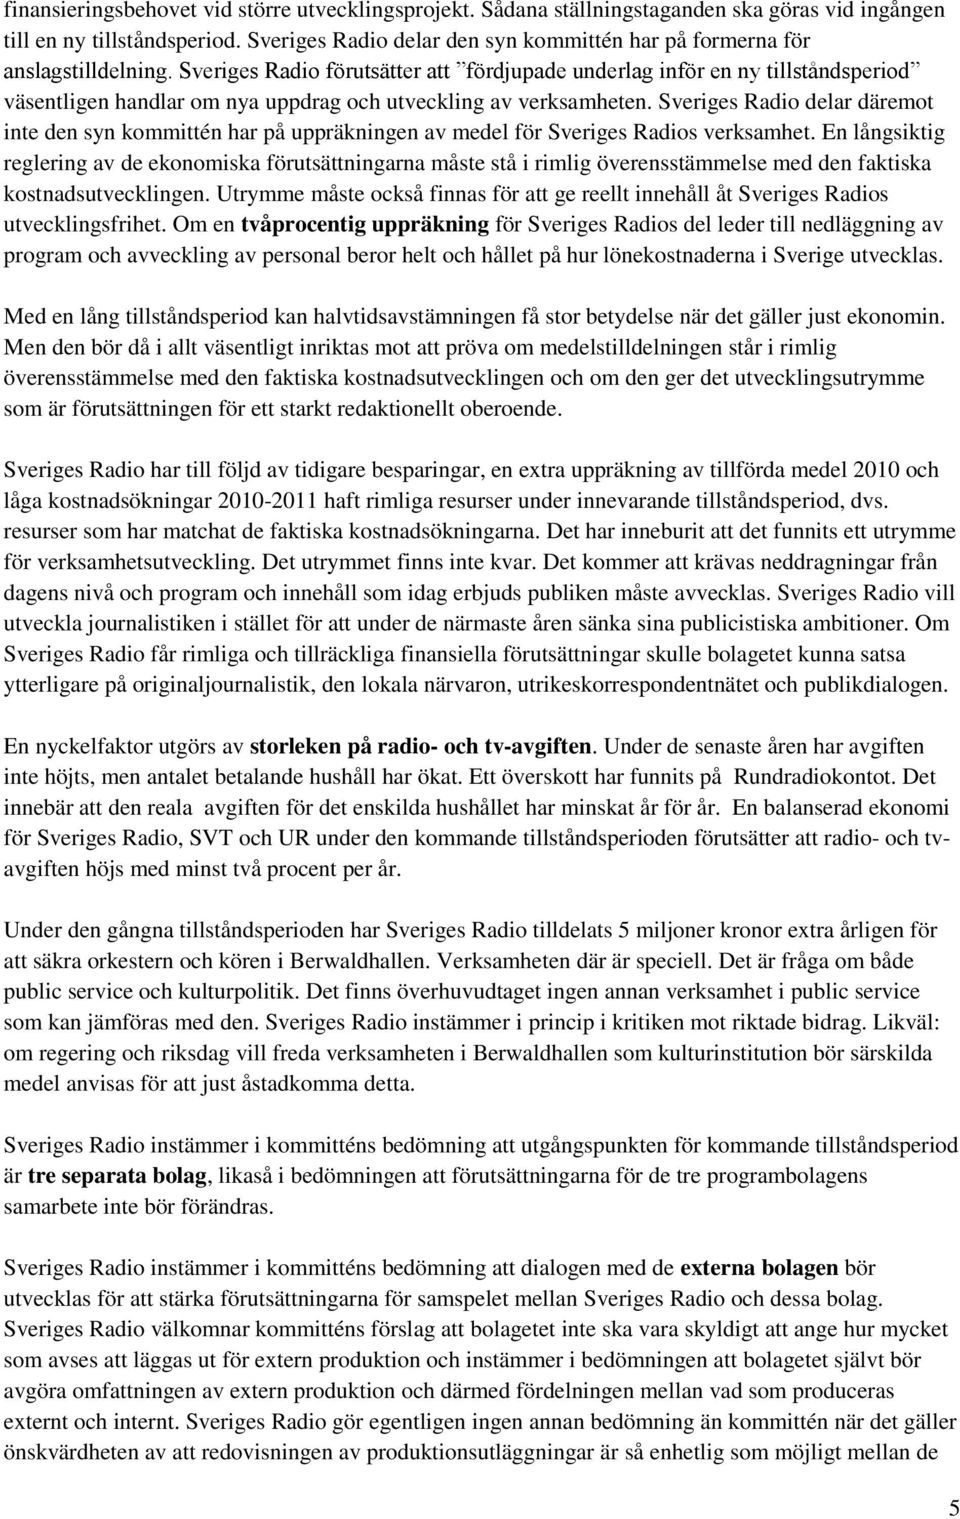 Sveriges Radio förutsätter att fördjupade underlag inför en ny tillståndsperiod väsentligen handlar om nya uppdrag och utveckling av verksamheten.